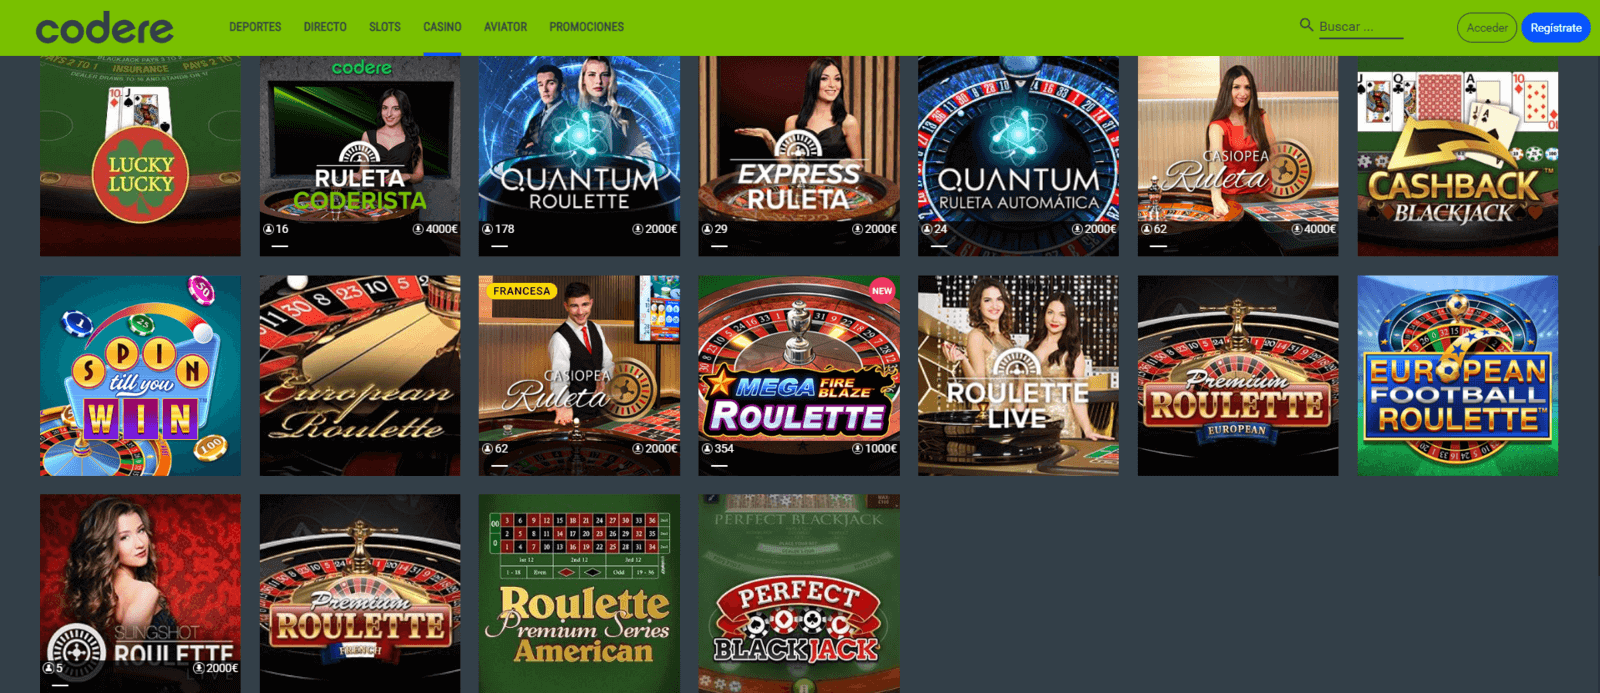 Juegos de Codere Casino por dinero real